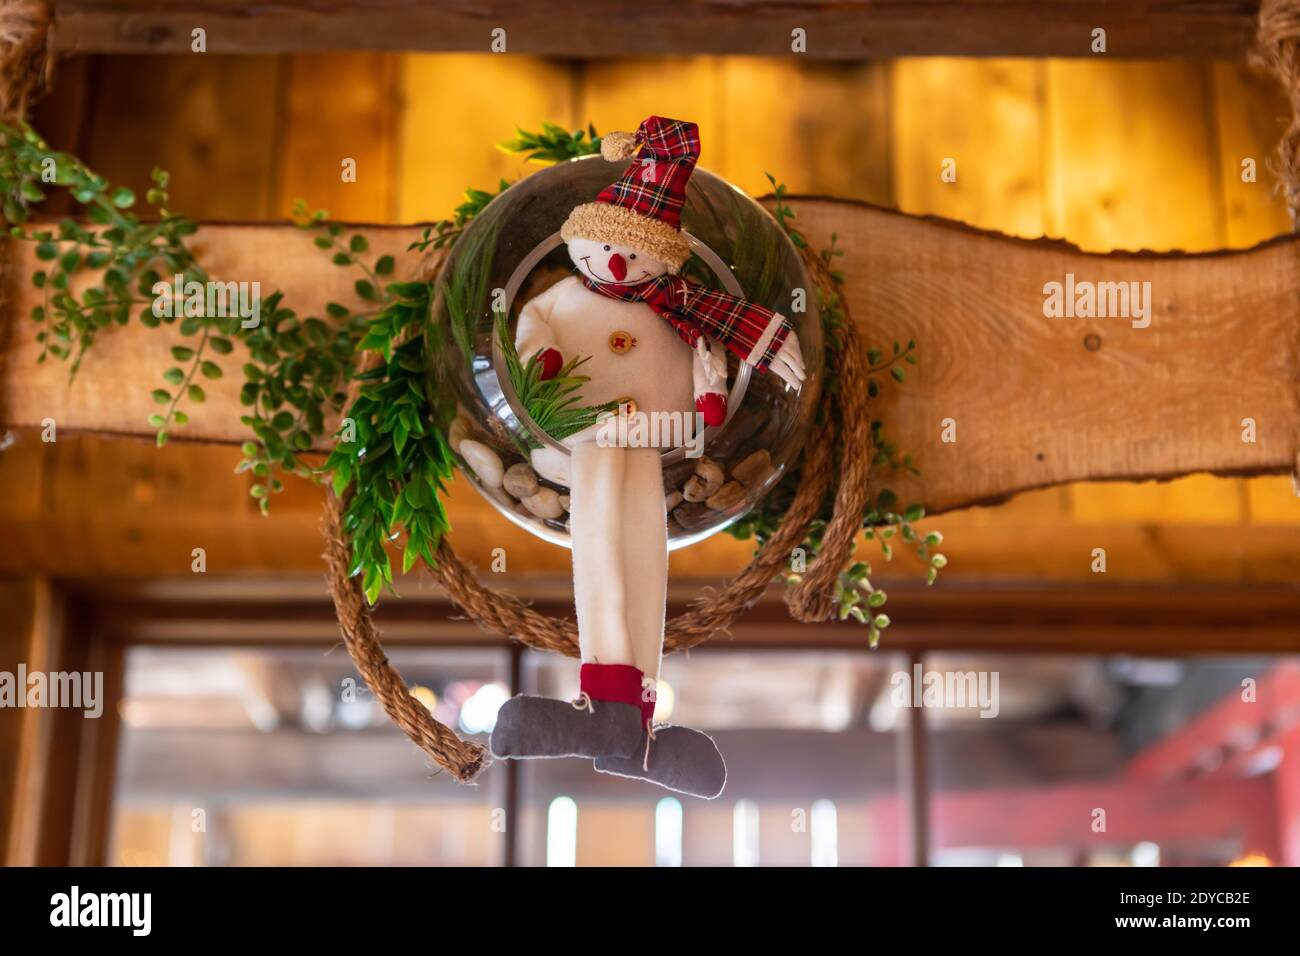 Selektive Fokus von lächelnd gefüllte Schneemann Spielzeug mit Kranz und Blätter auf Holzstück als Dekoration für weihnachten und verwendet Neujahr im Restaurant Stockfoto